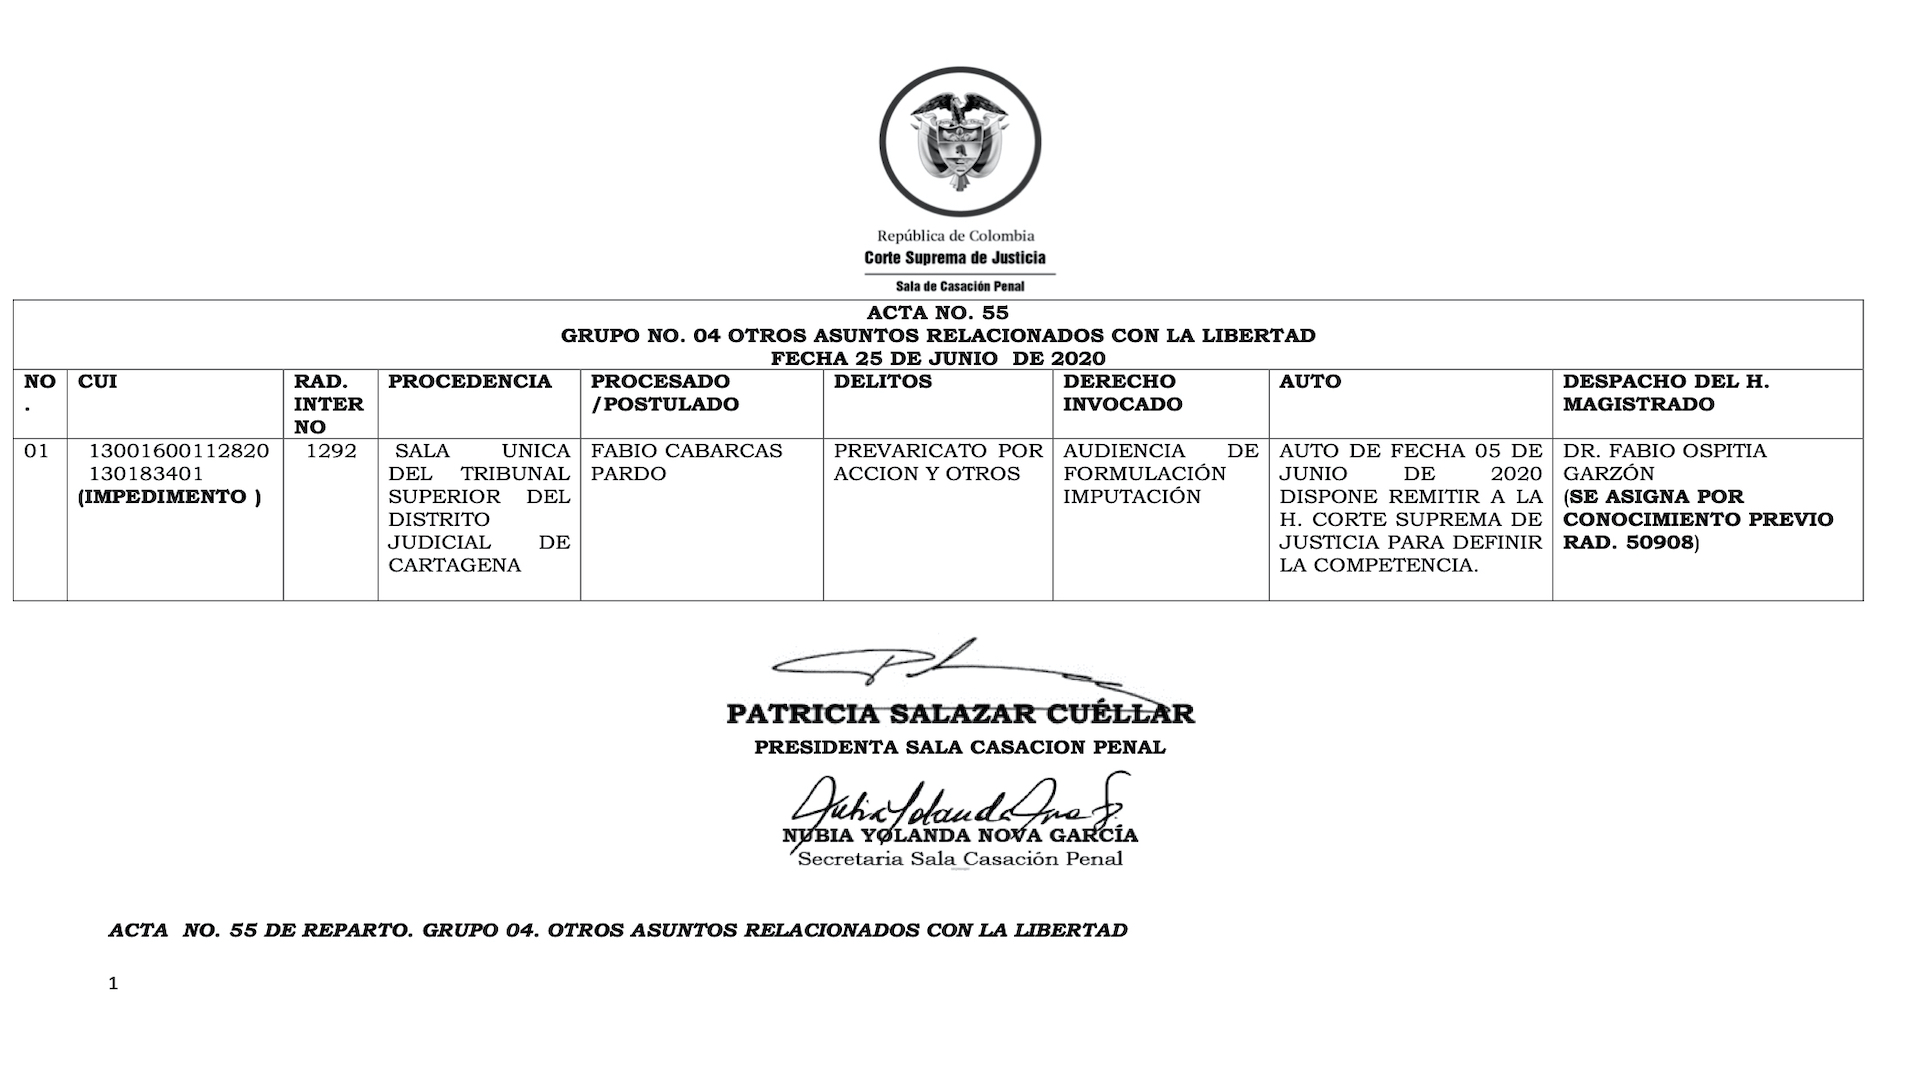 Corte Suprema de Justicia asigna delito de Prevaricato por Acción a Fabio Cabarcas Pardo - Acta nº 55 / (Cortesuprema.gov.co).